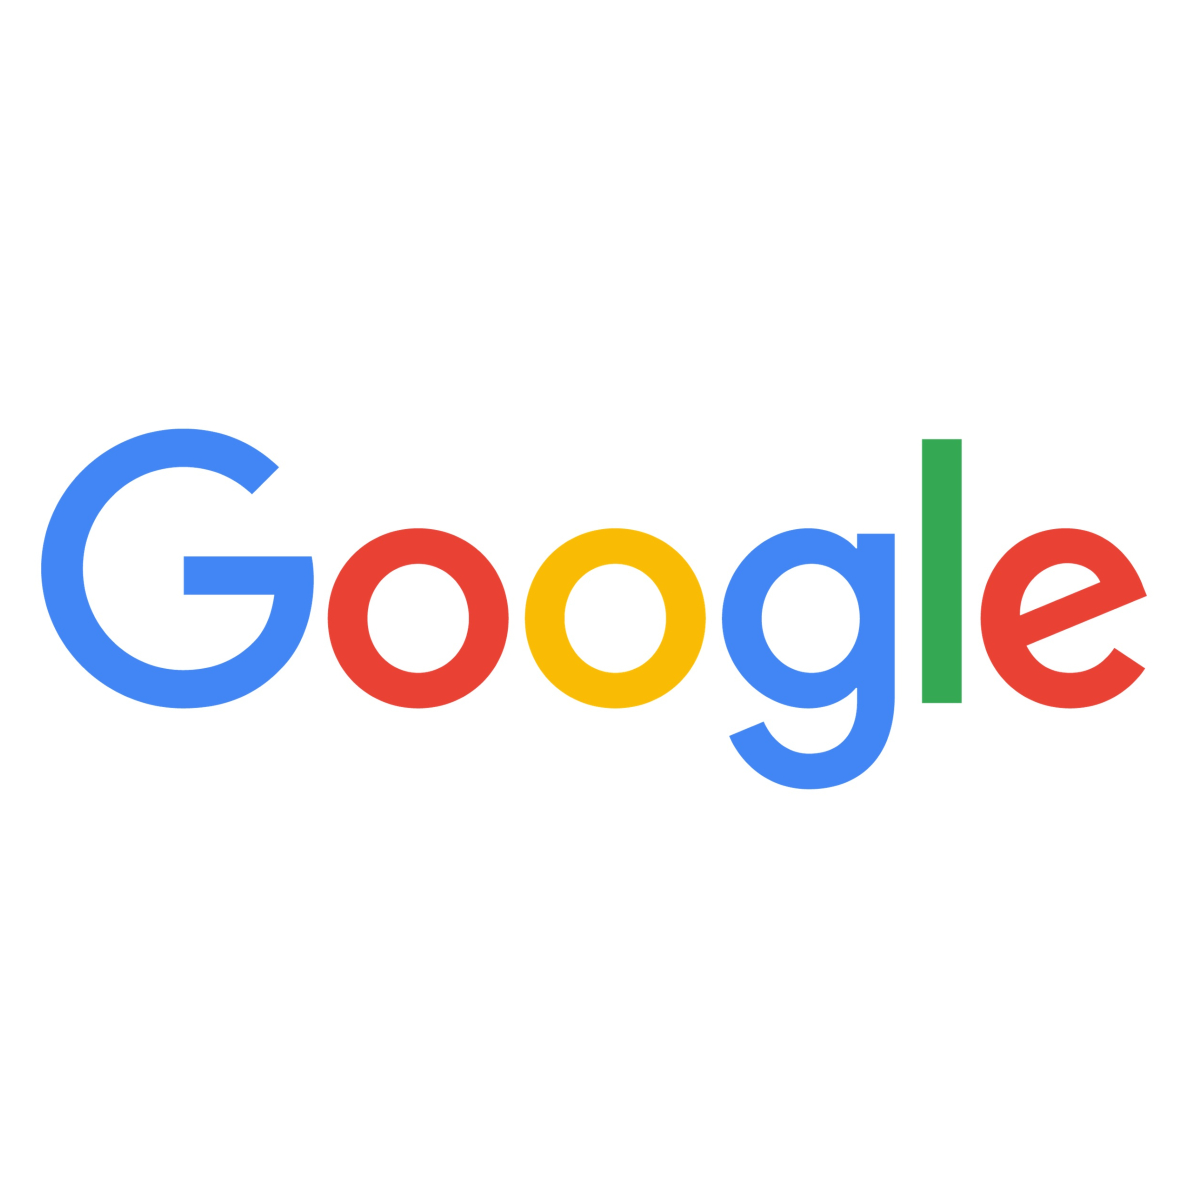 Pratiques publicitaires : la Commission européenne poursuit son enquête contre Google